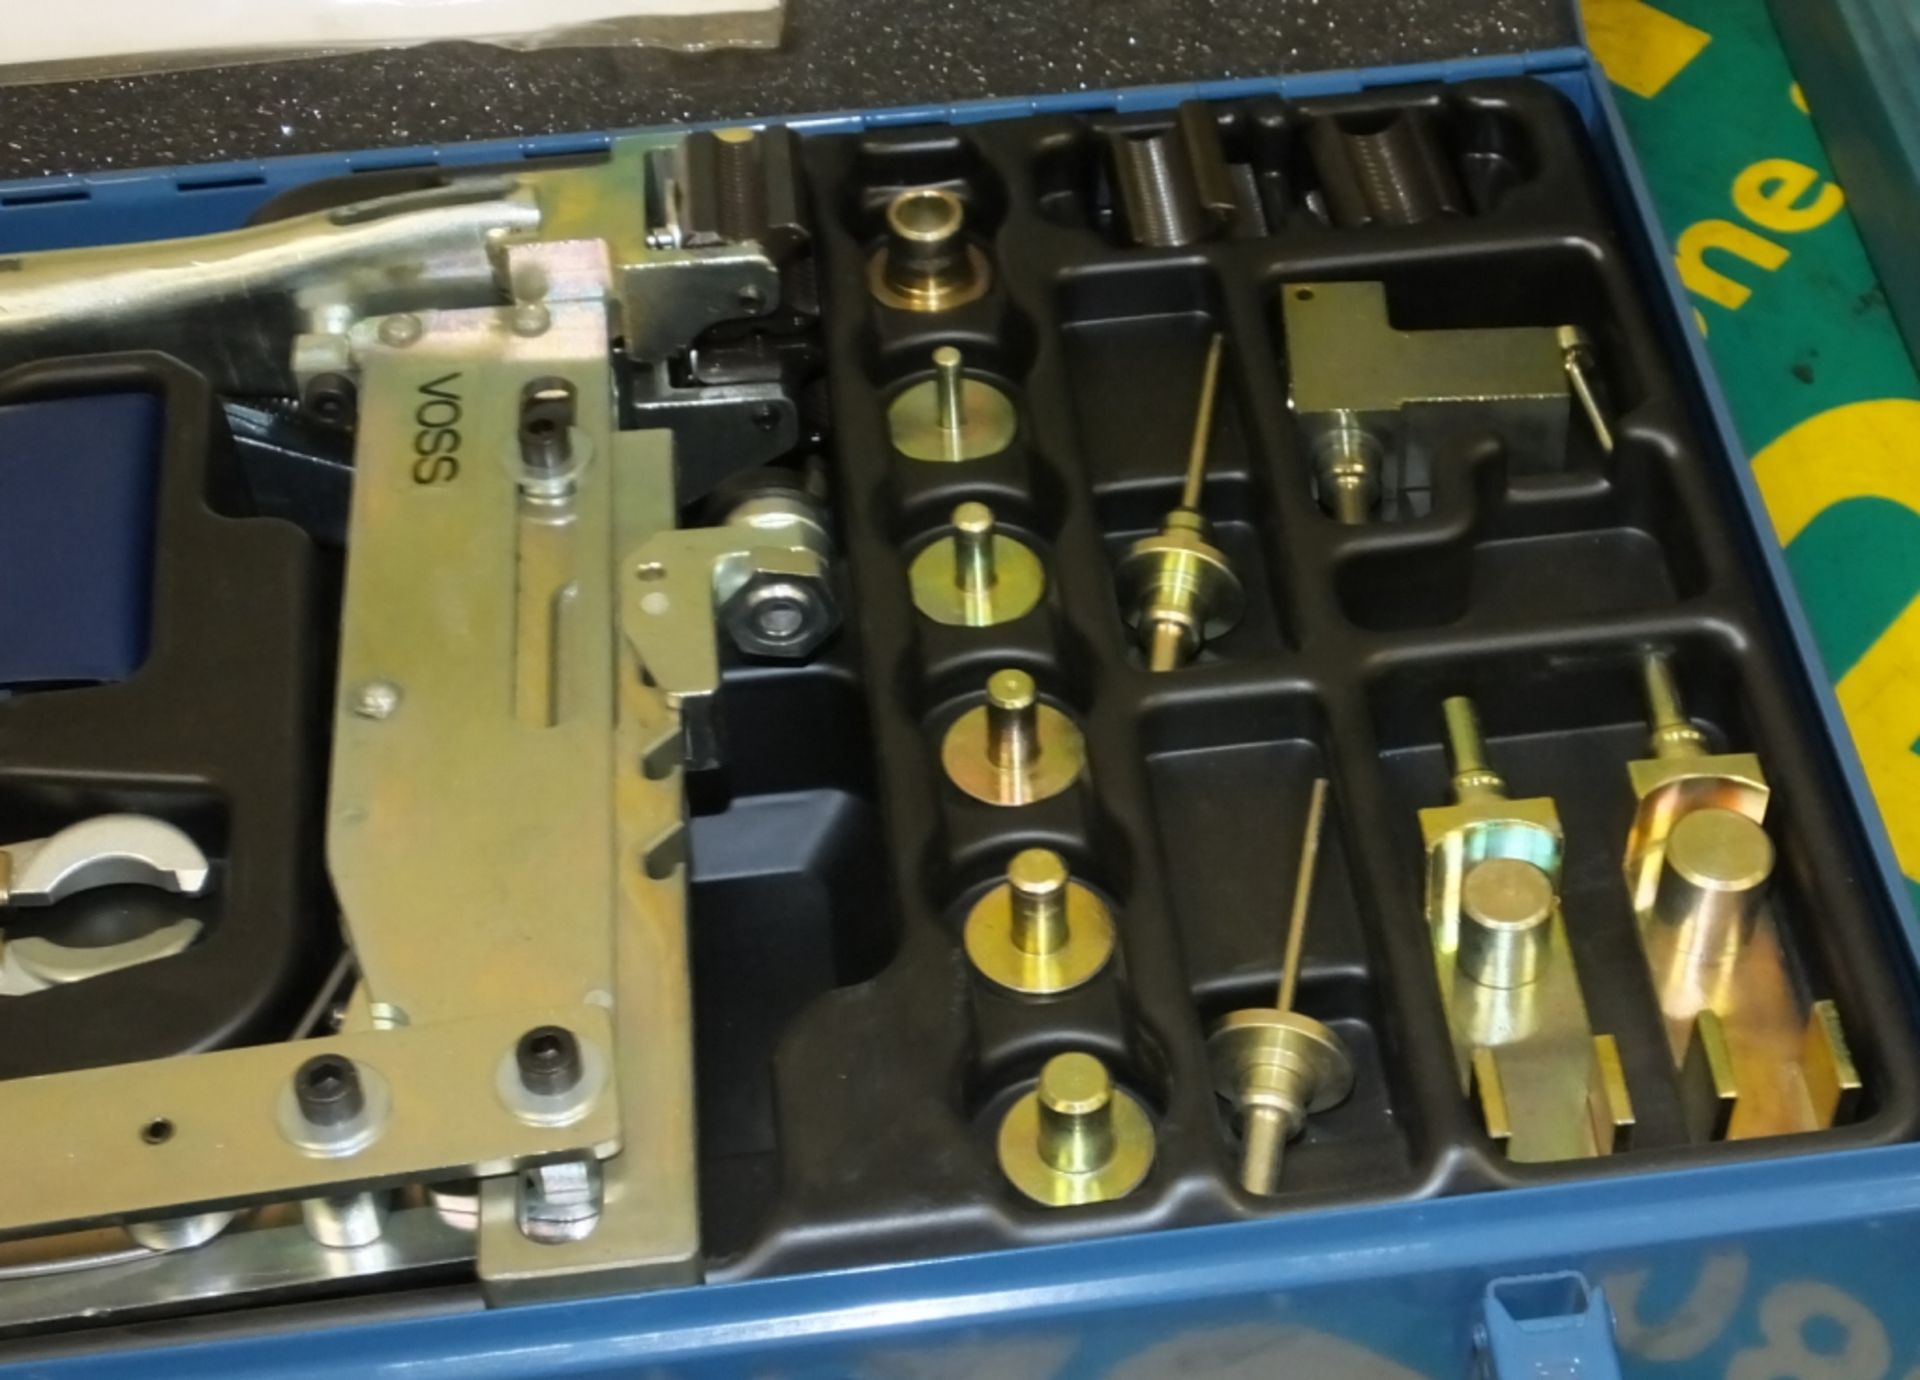 Man Sachnummer Tool Kit Brake in carry case - Image 3 of 3